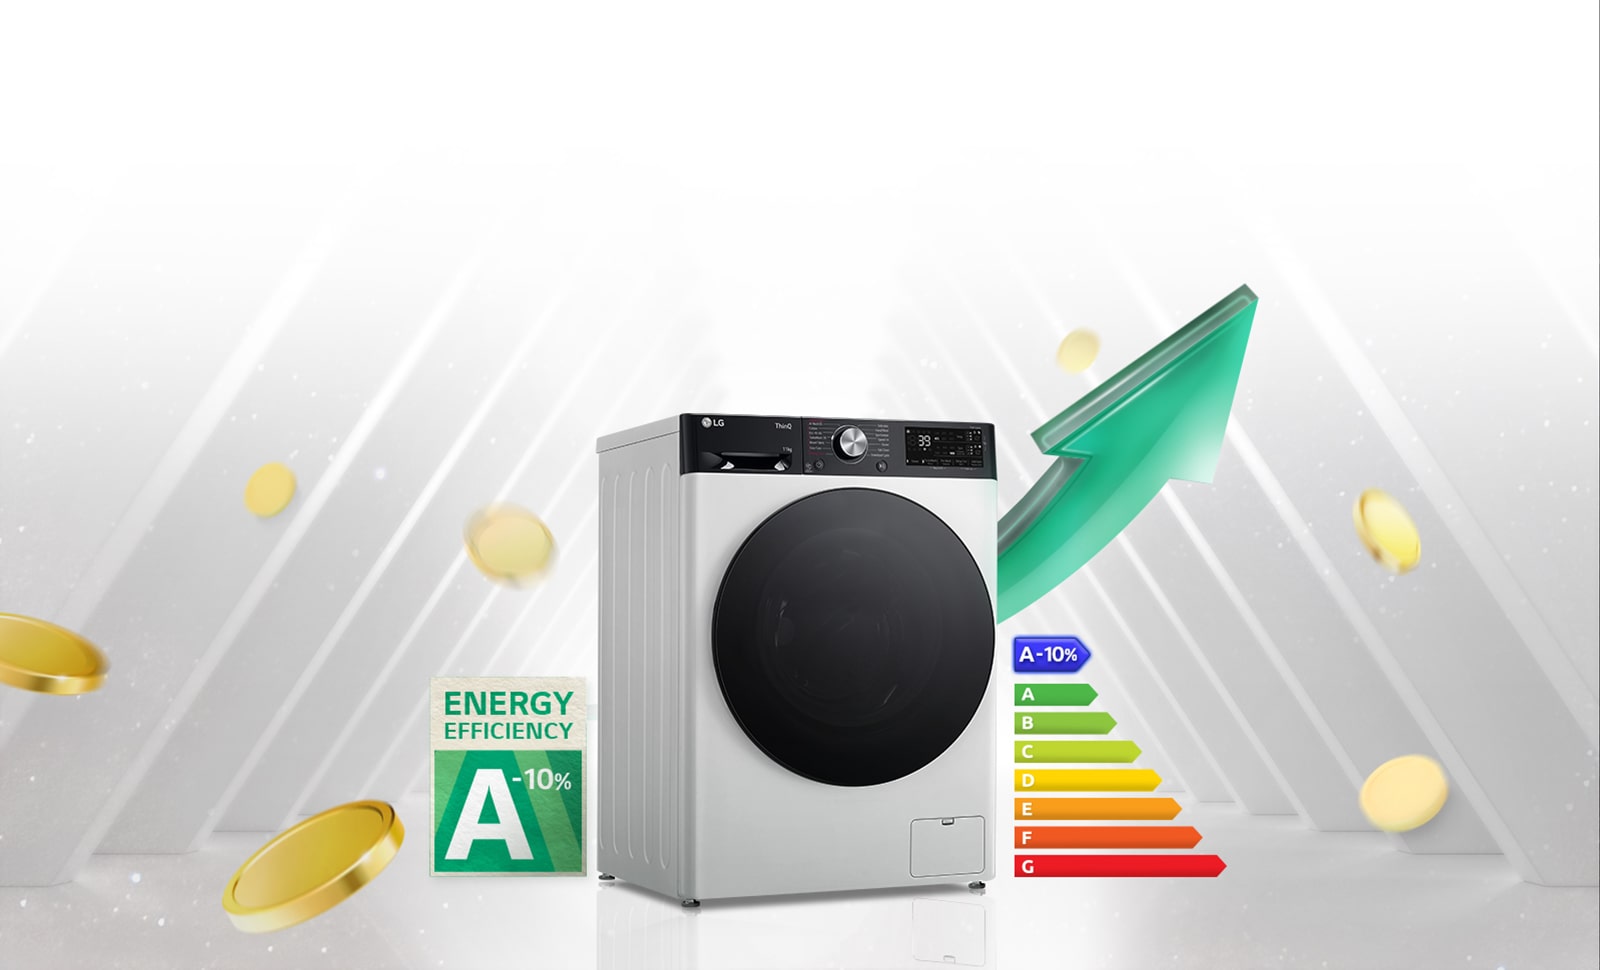 "תווית דירוג צריכת האנרגיה A-10% עם יעילות גבוהה וגרף דירוג האנרגיה מוצגים ליד מכונת הכביסה. מאחורי מכונת הכביסה מופיע חץ הירוק כלפי מעלה."